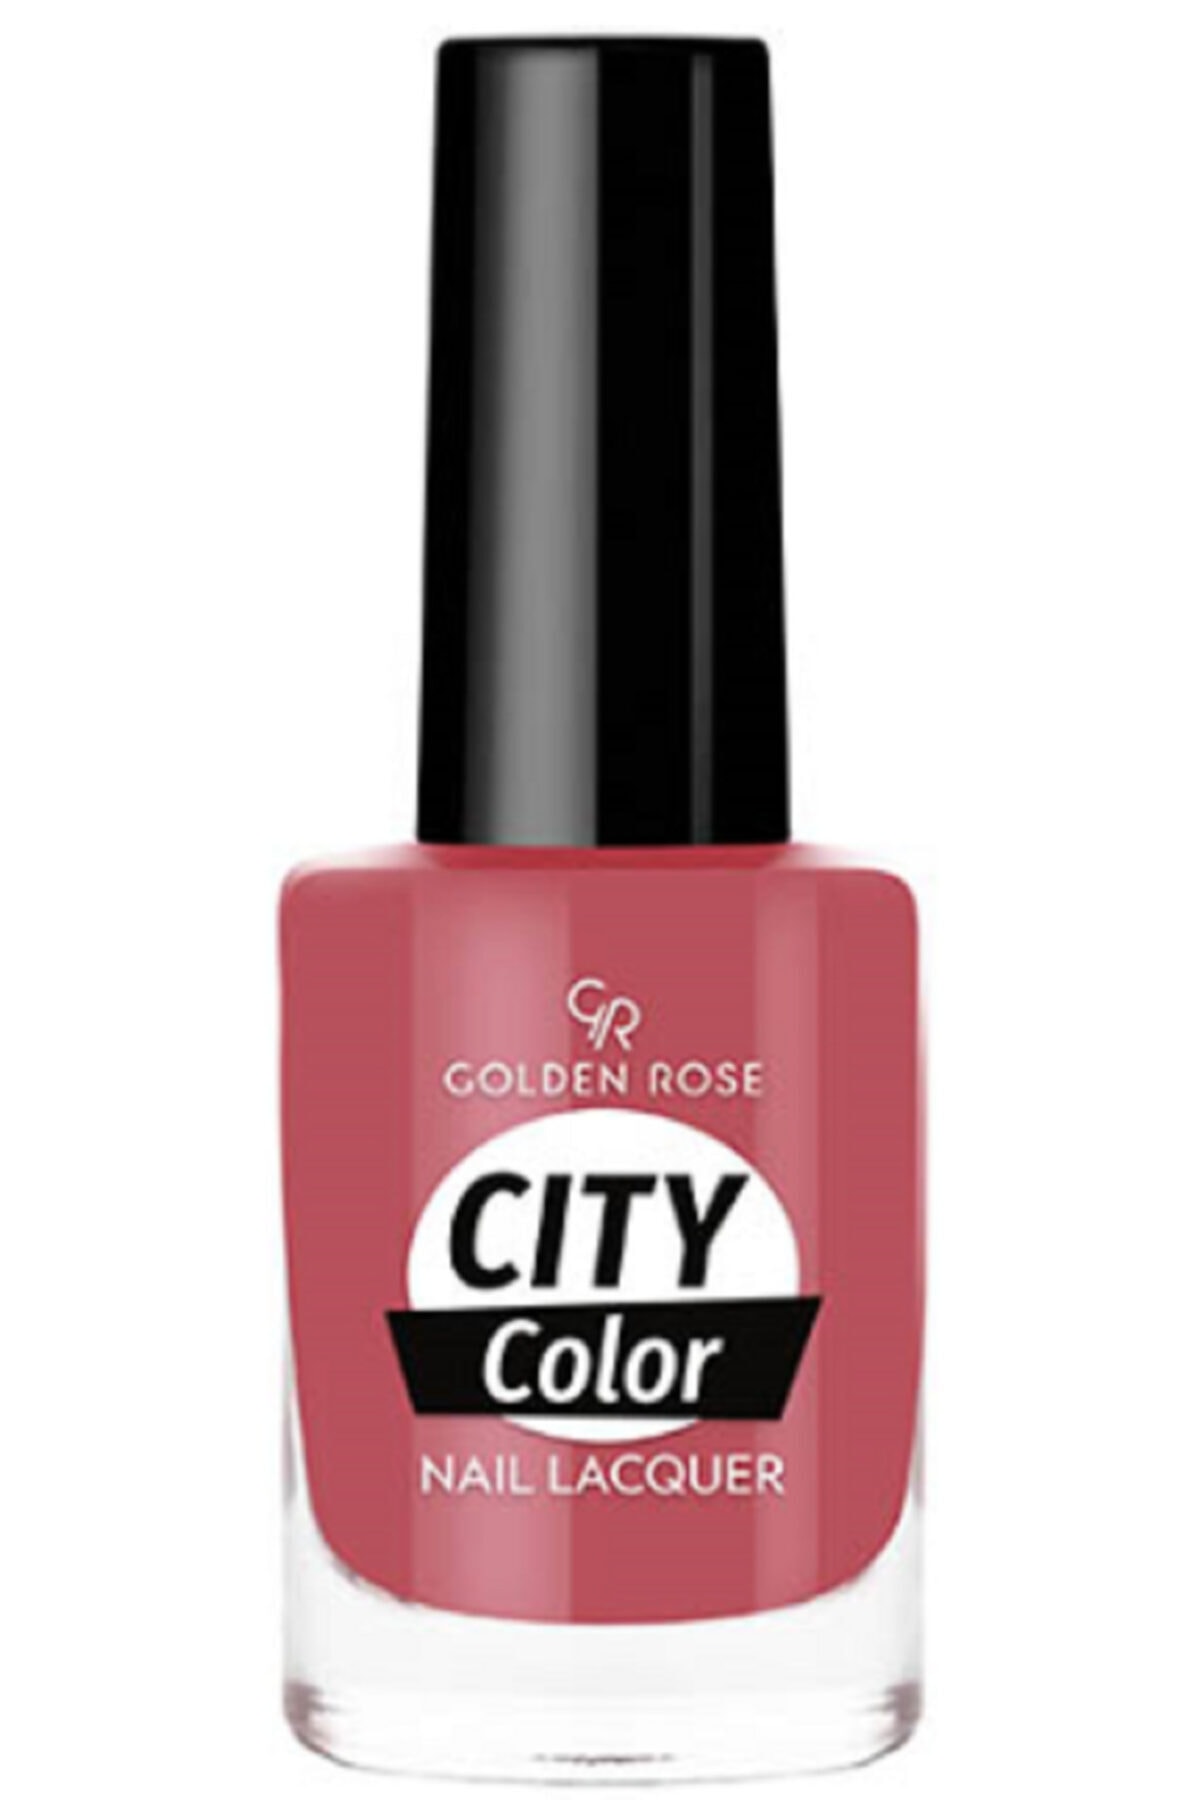 لاک ناخن سیتی کالر City color رنگ صورتی براق شماره 10 گلدن رز Golden Rose